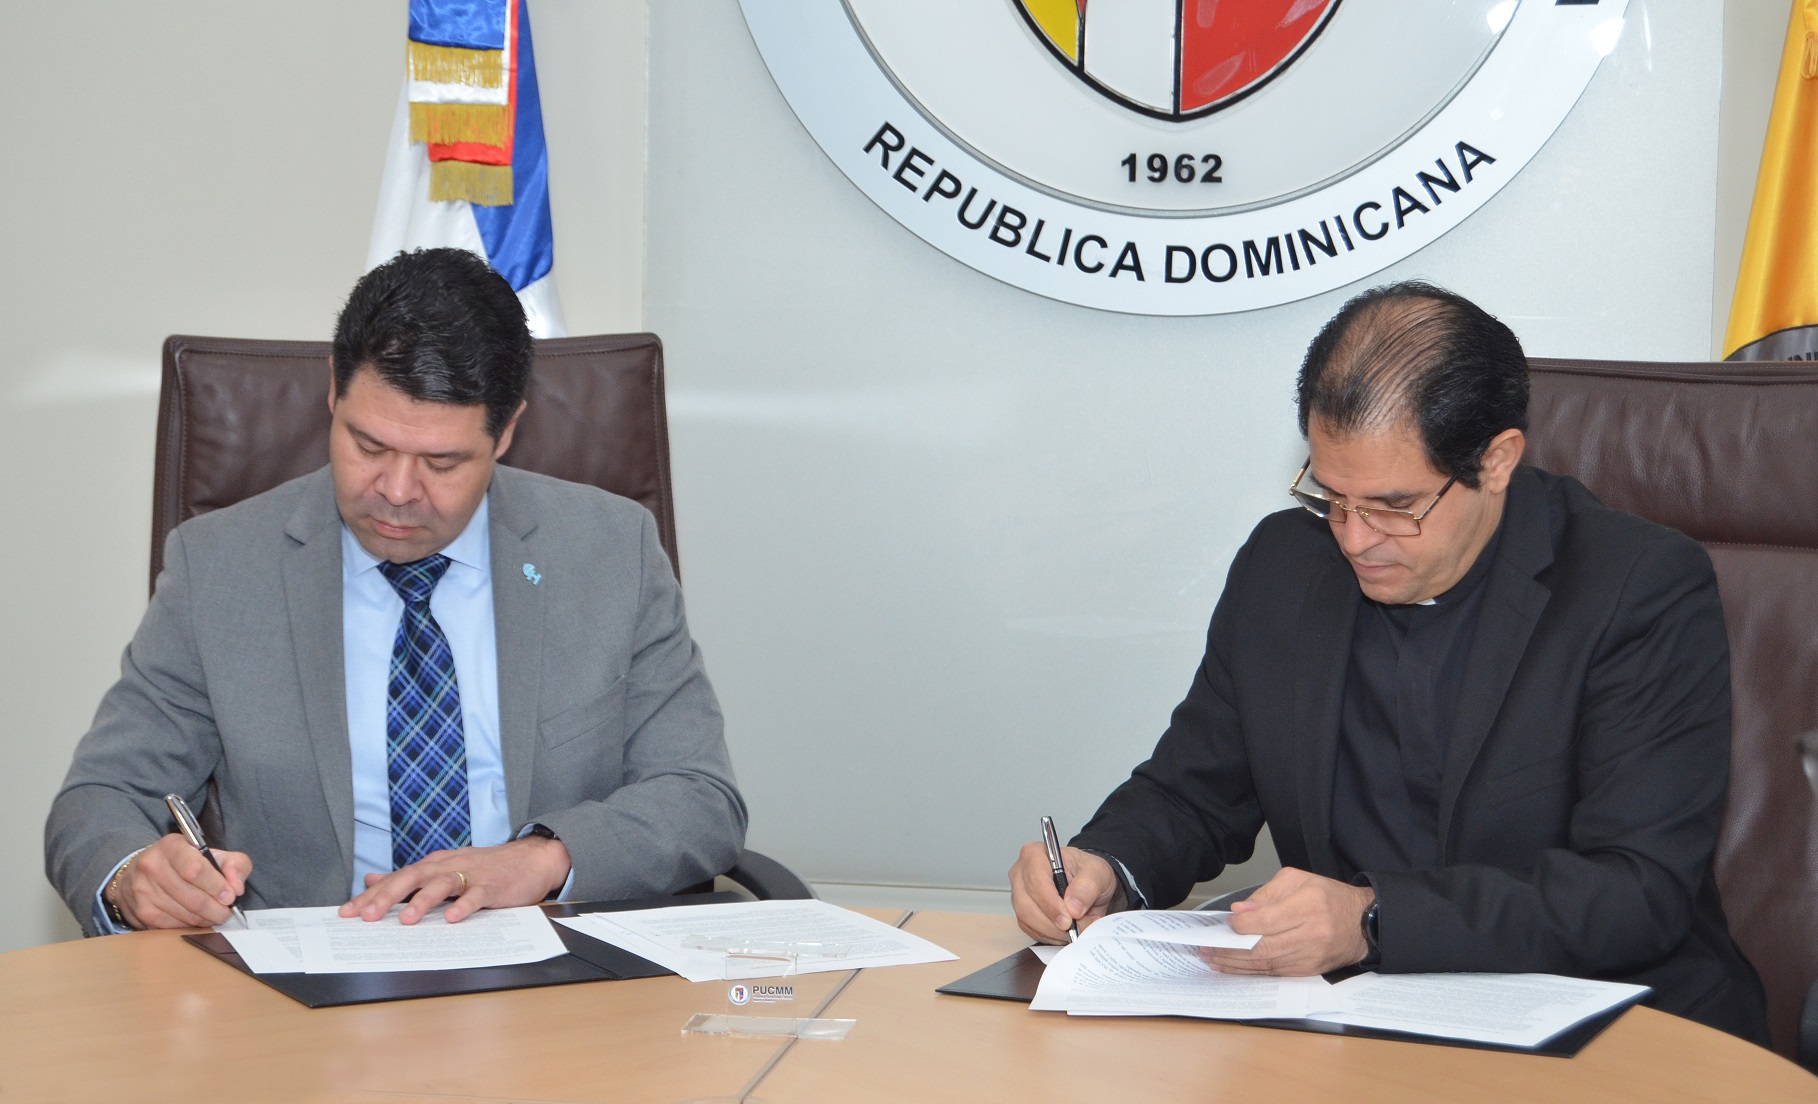 Los representantes de las instituciones firman el acuerdo.